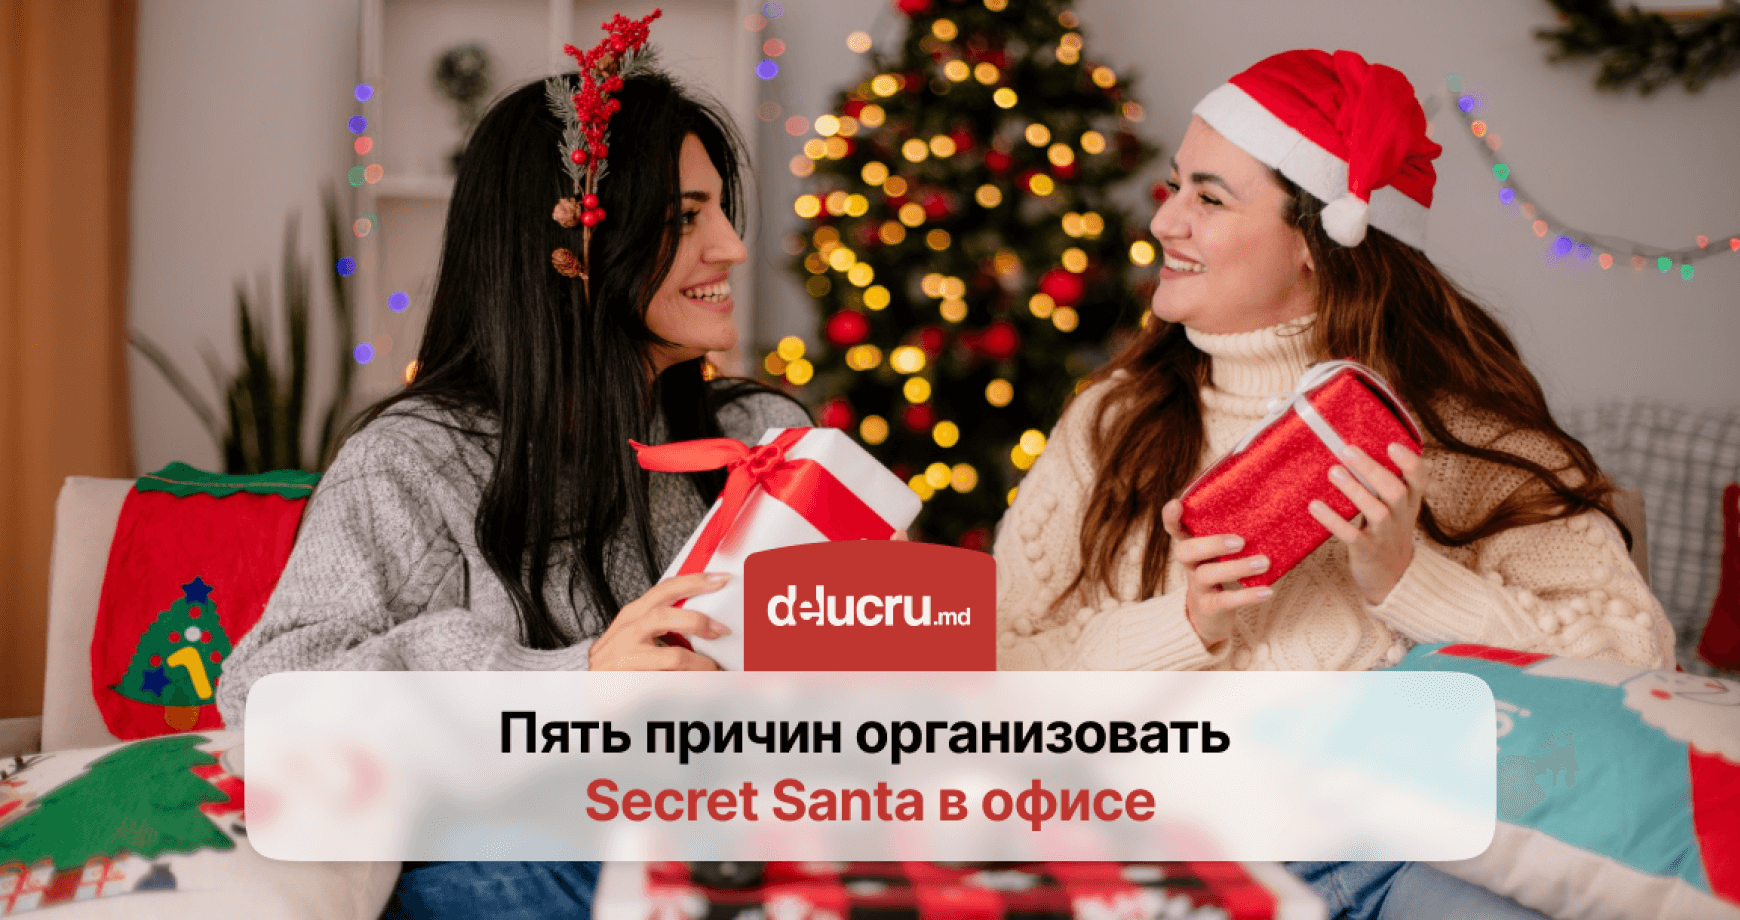 Как организовать Secret Santa на работе и создать праздничное настроение? Топ- 10 подарков коллегам